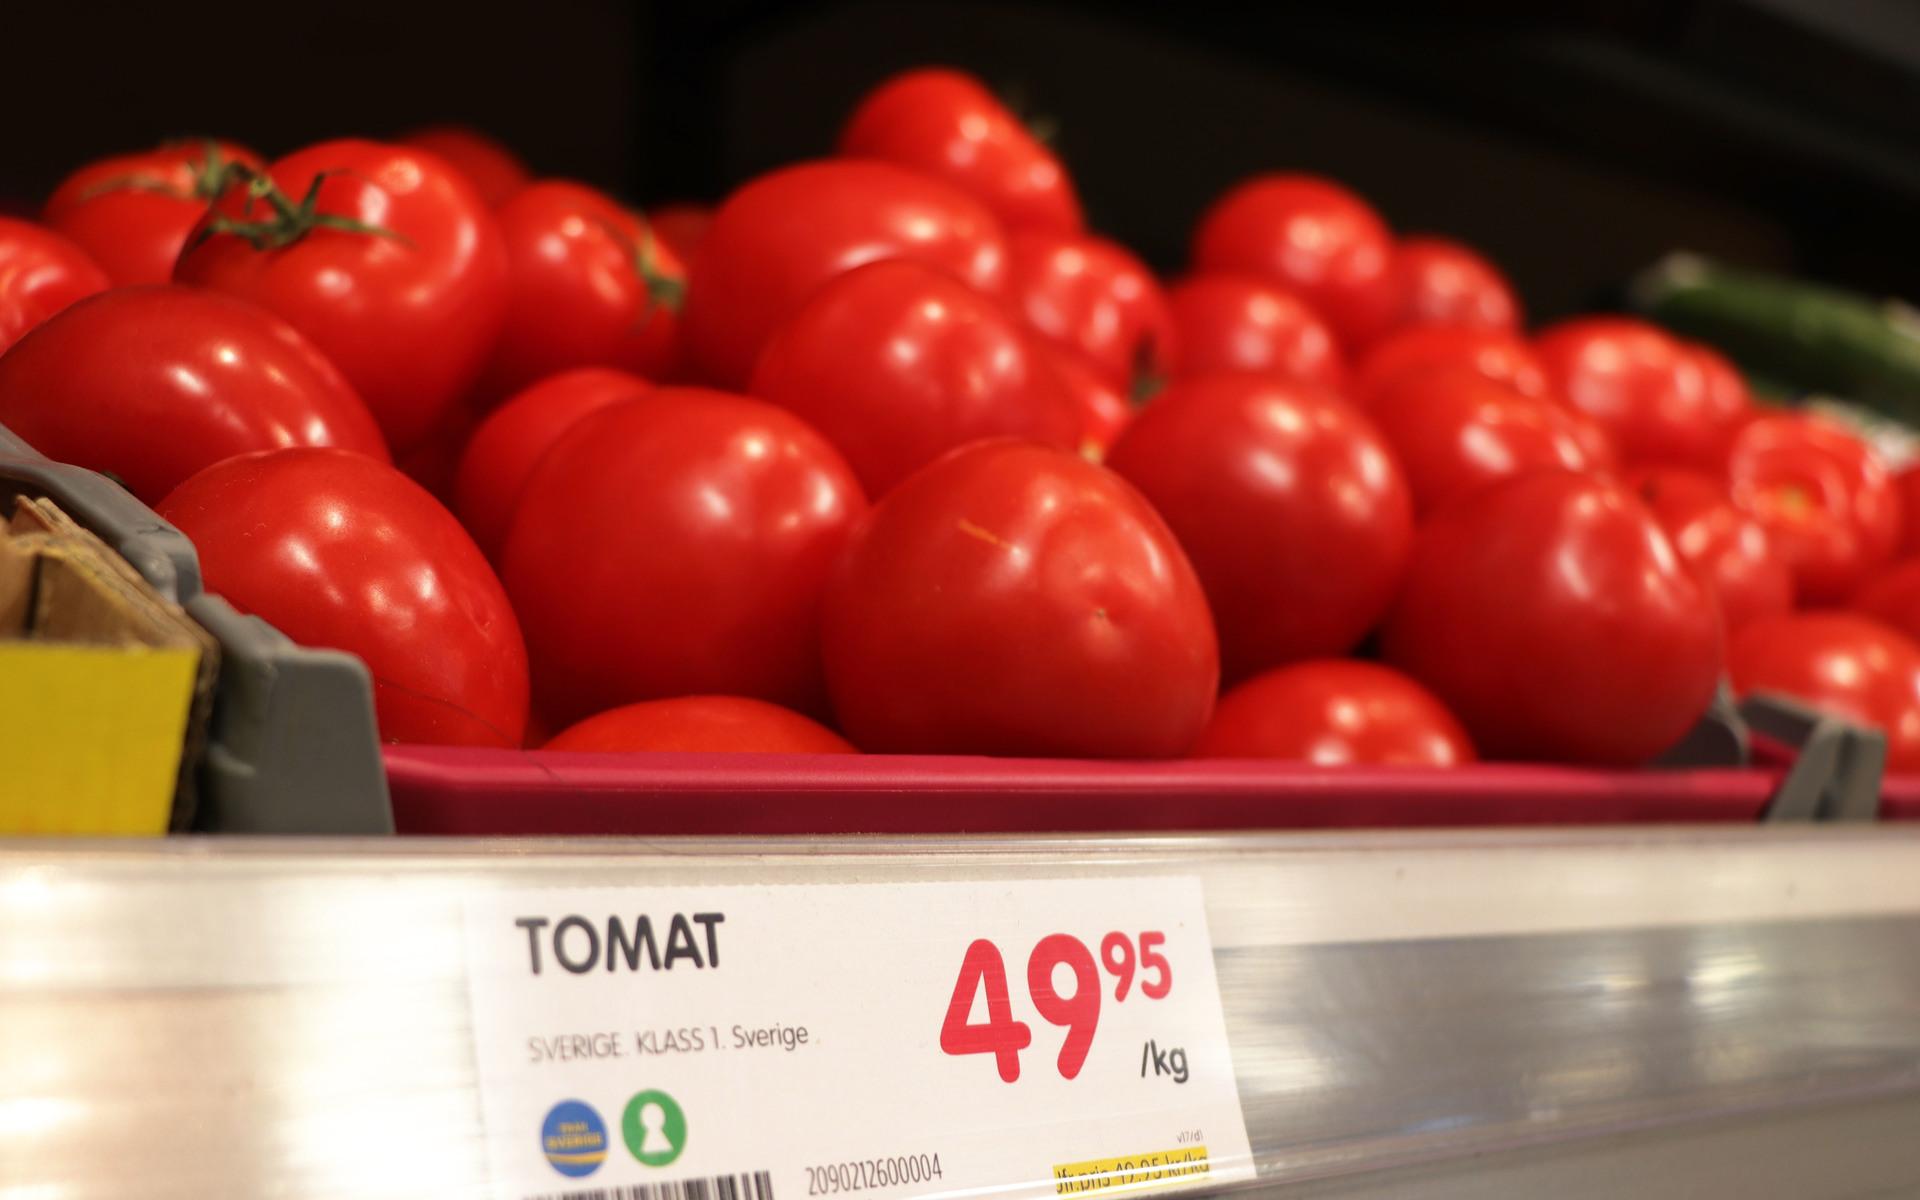 Tomatpriset har stigit med nästan 30 procent det senaste året.